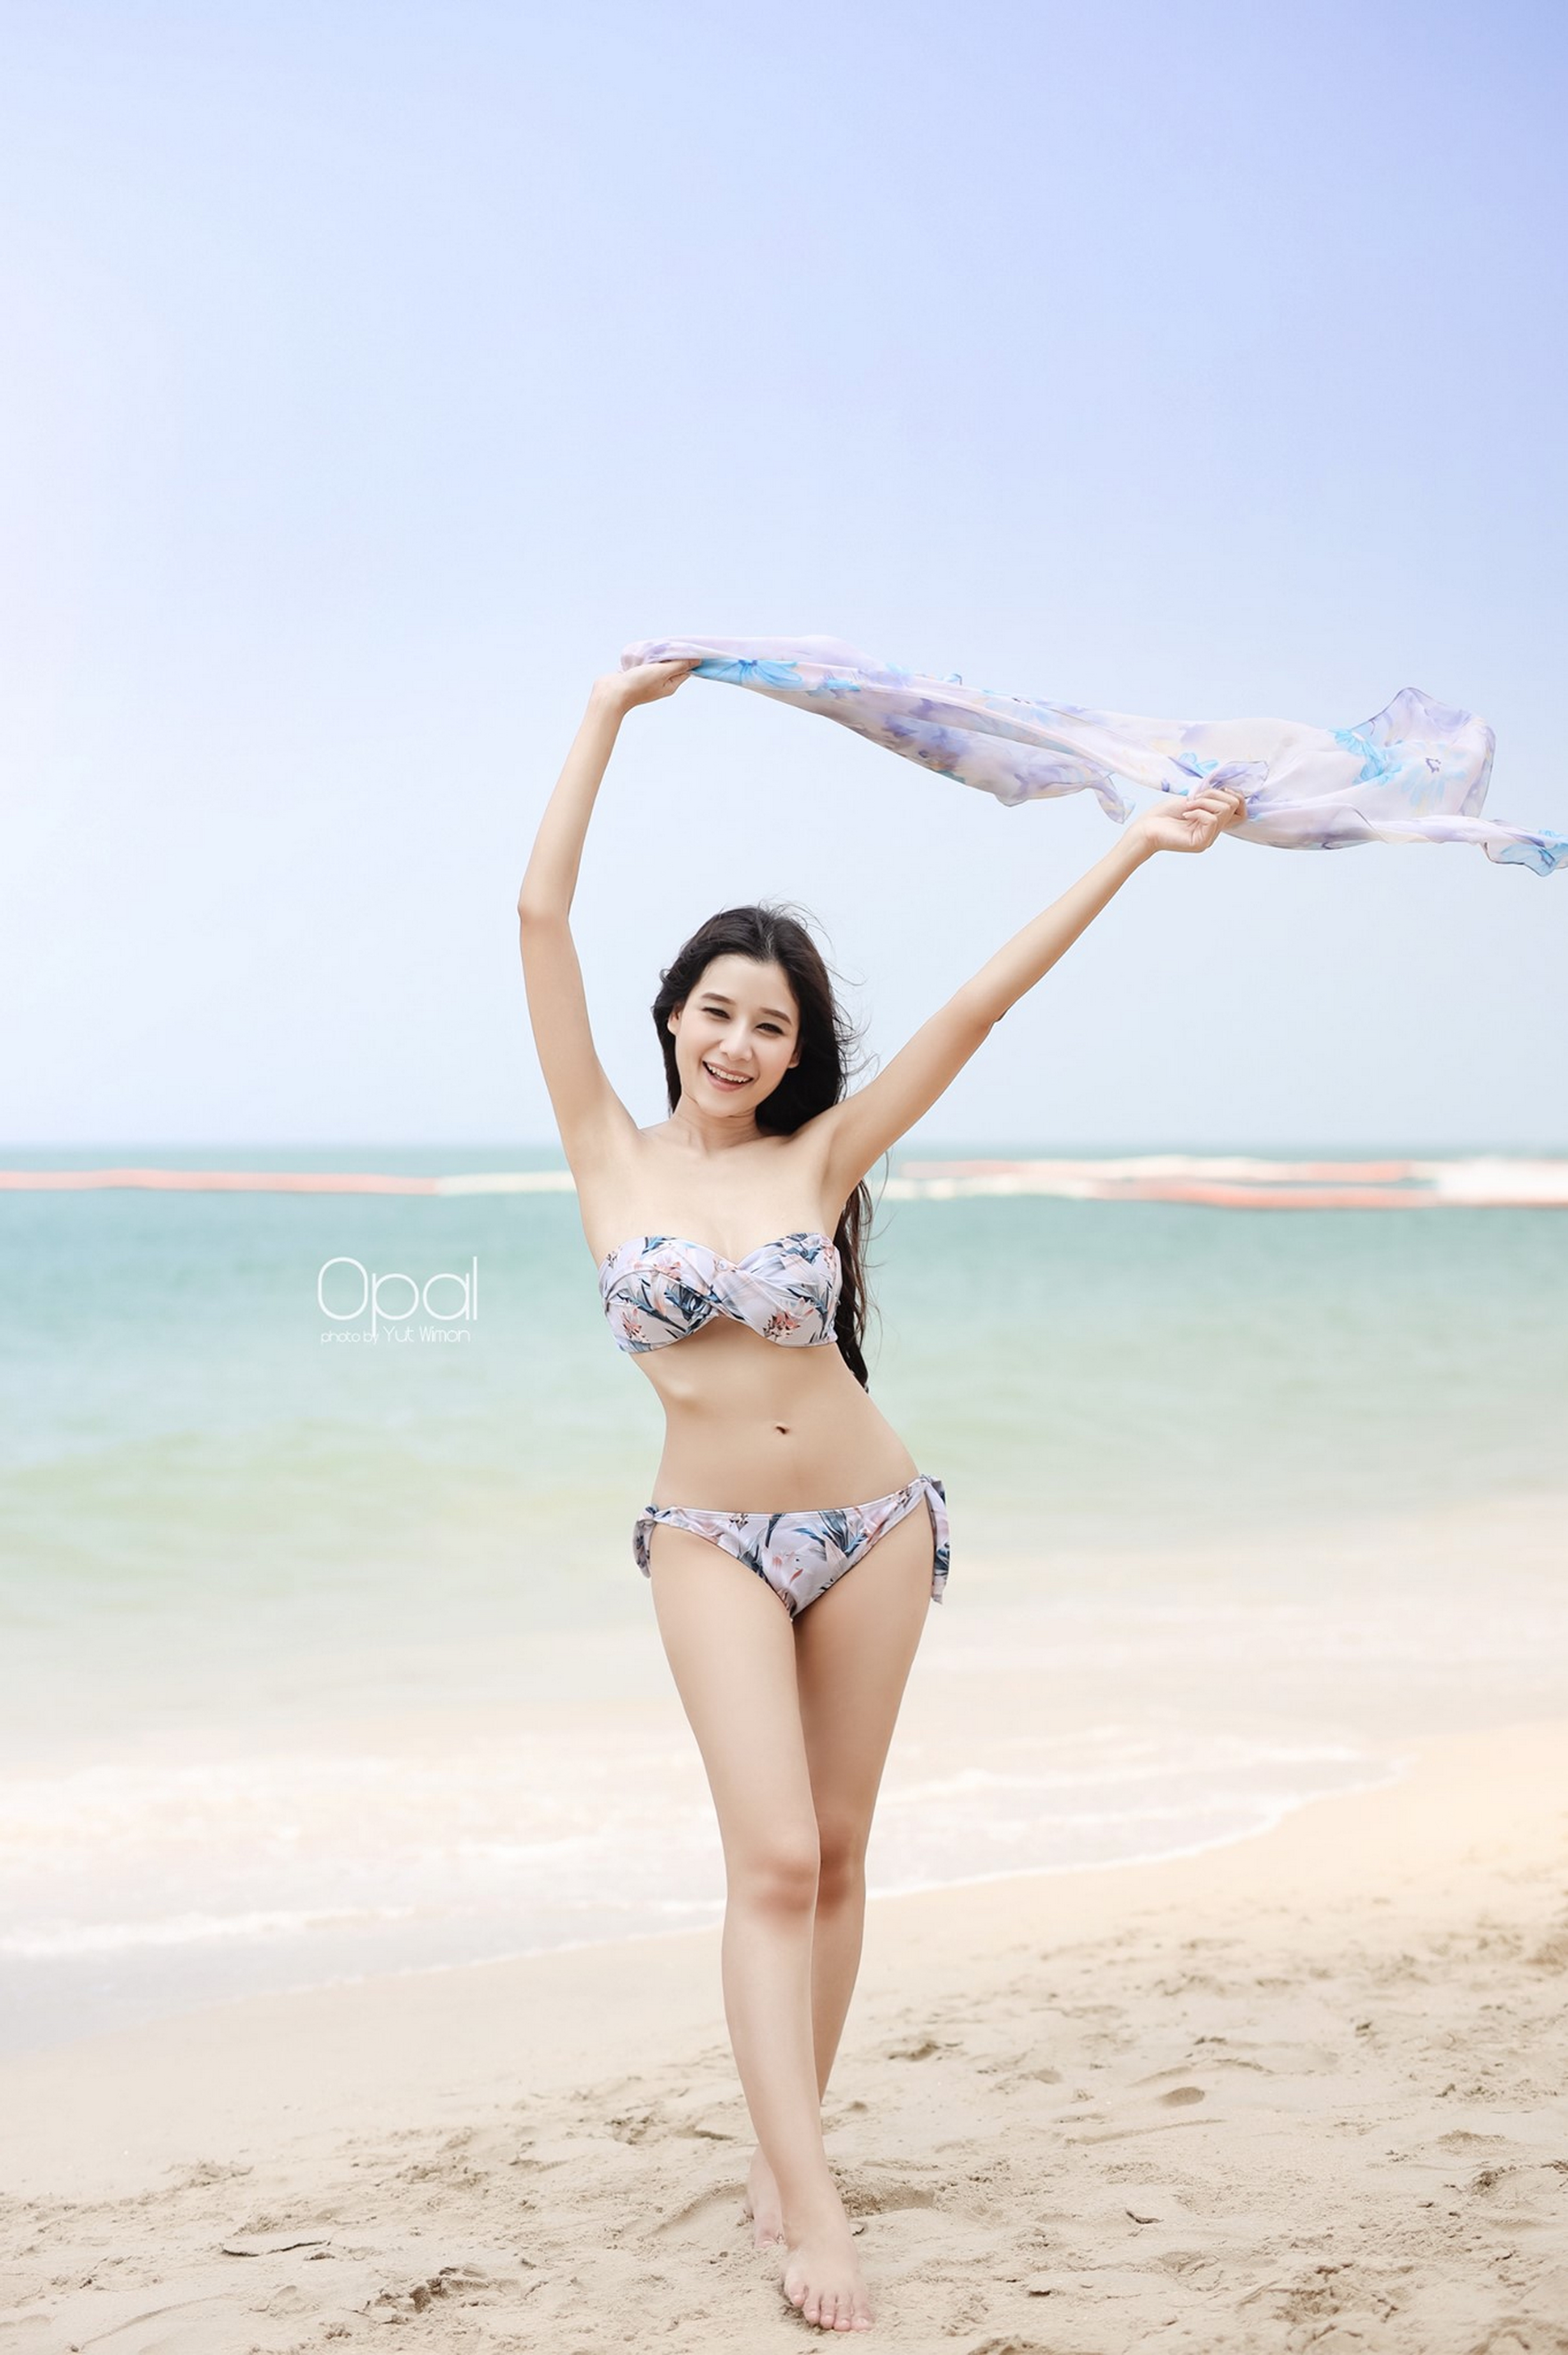 craig munnik share sexy asian girls wallpaper photos